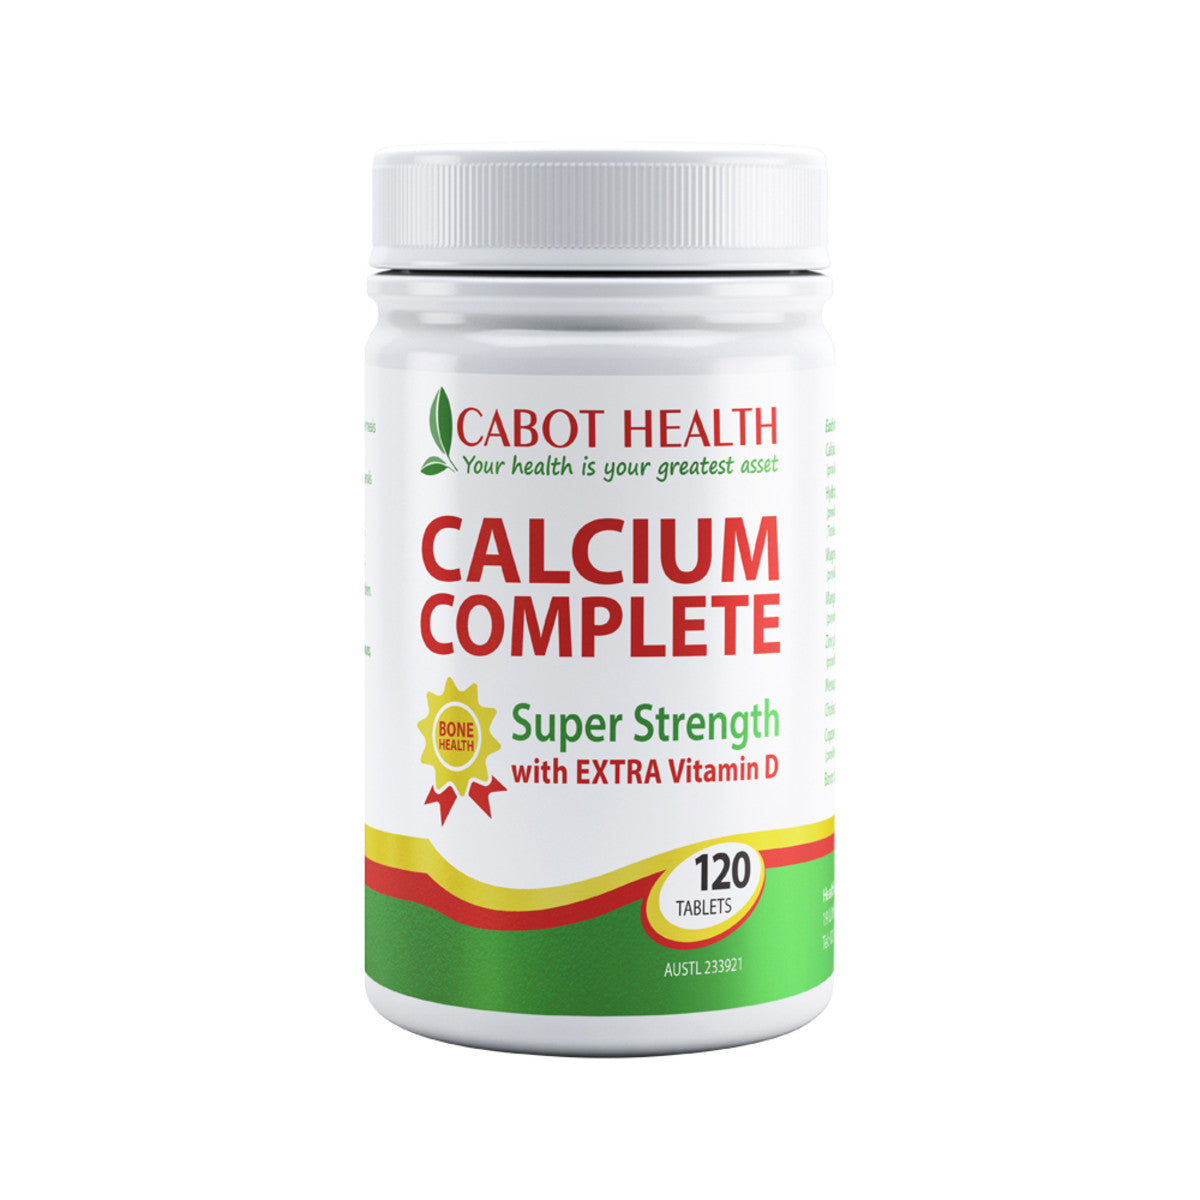 Cabot Health - Calcium Complete